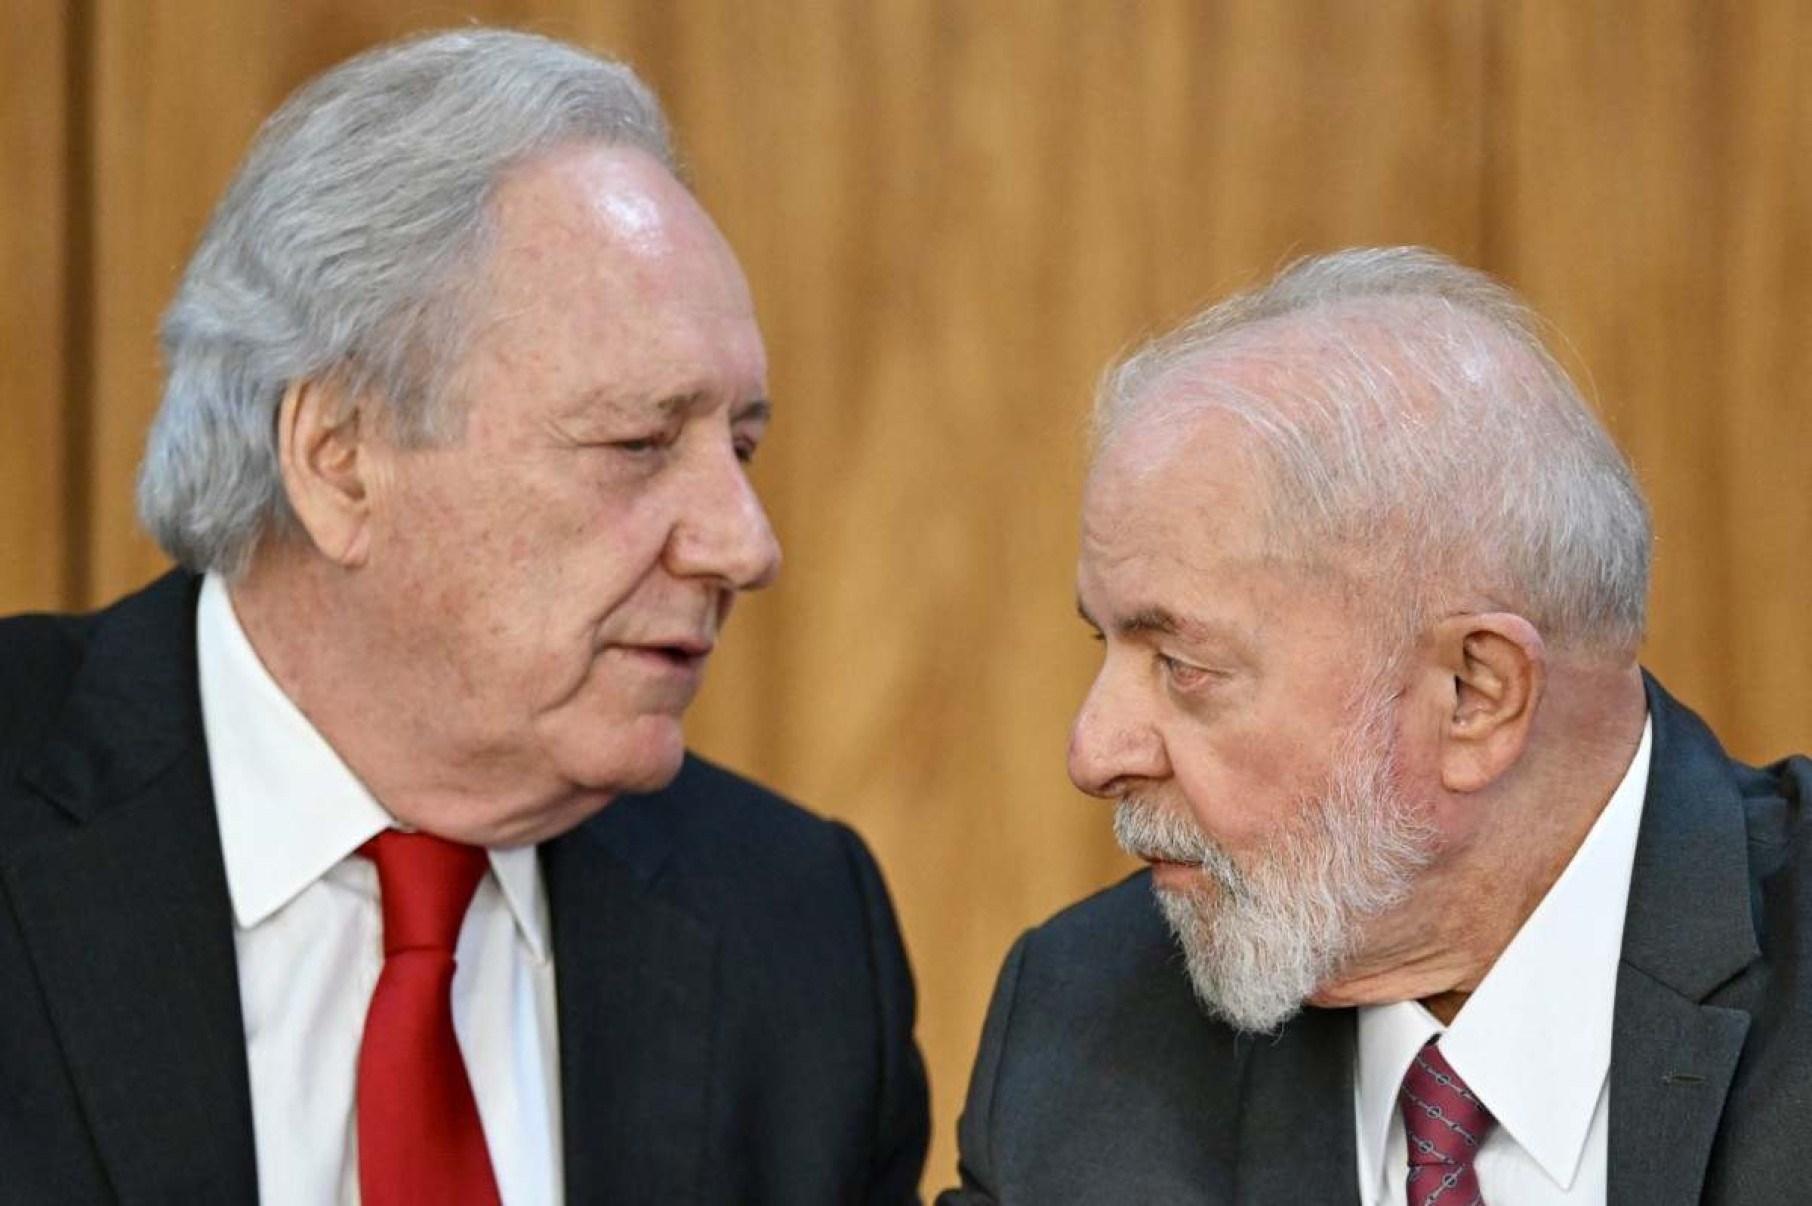 Governo prepara plano para segurança pública, anuncia Lula